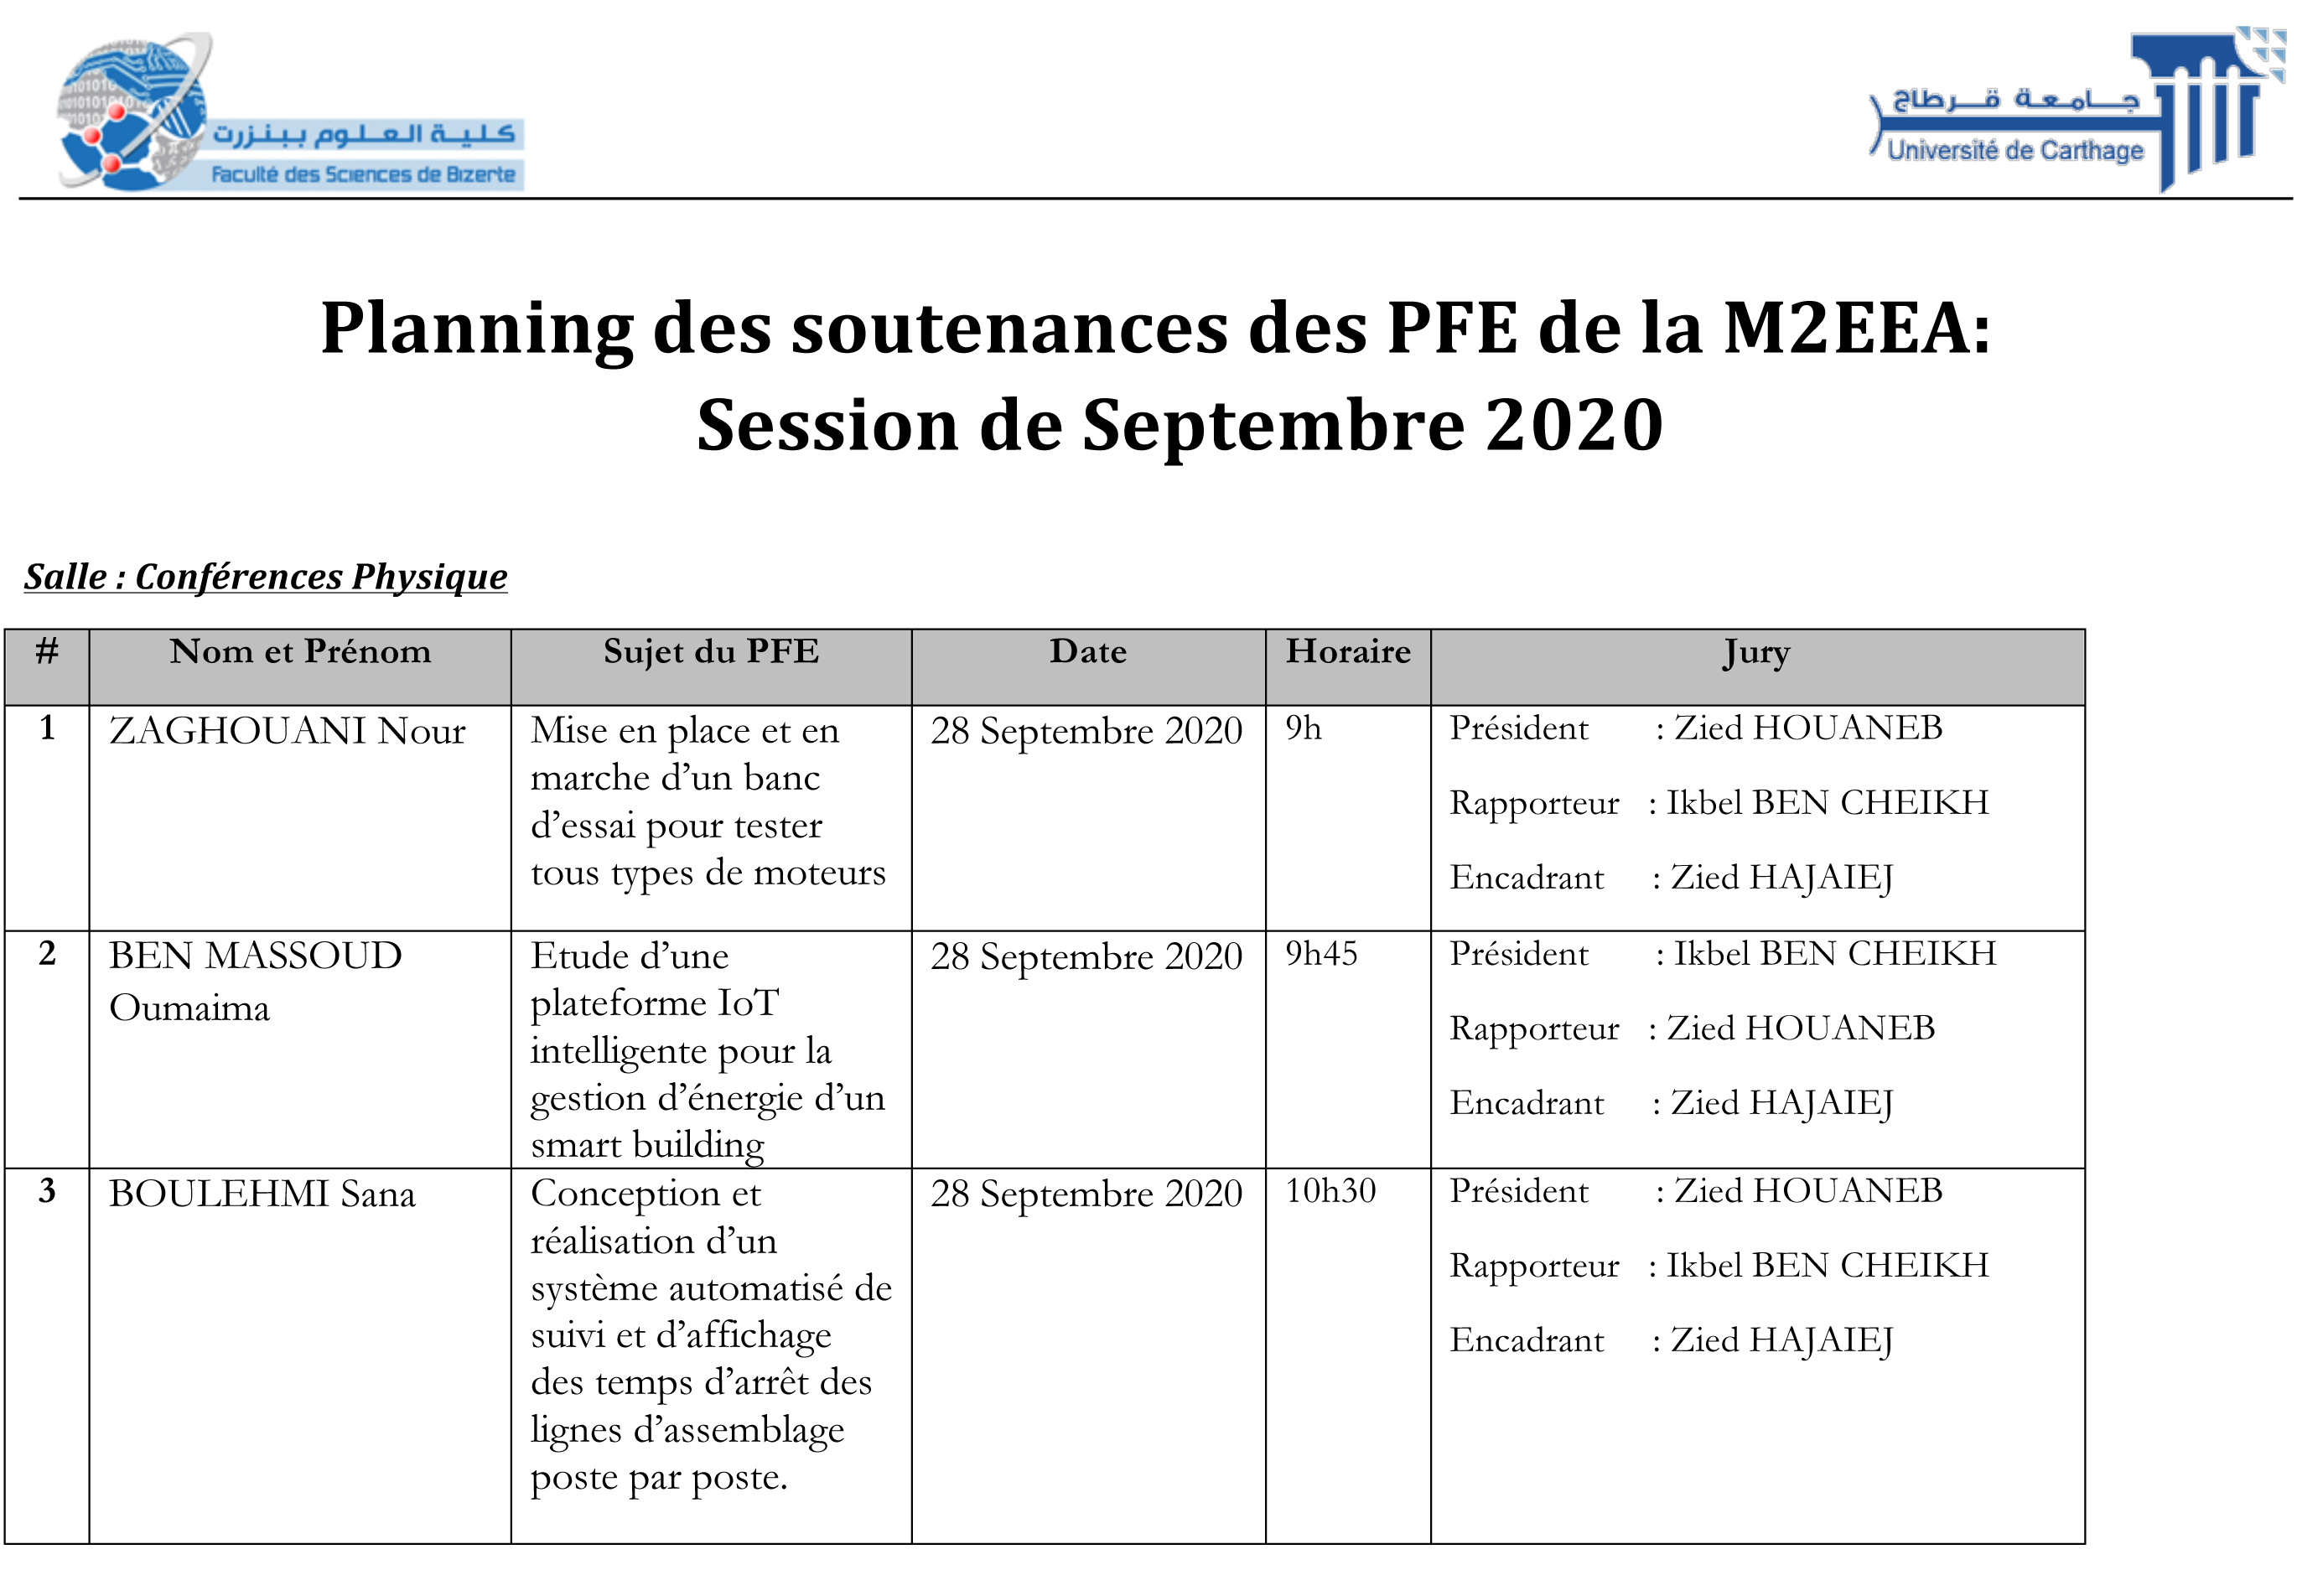 Planning des soutenances de M2EEA Session Septembre 2020 1